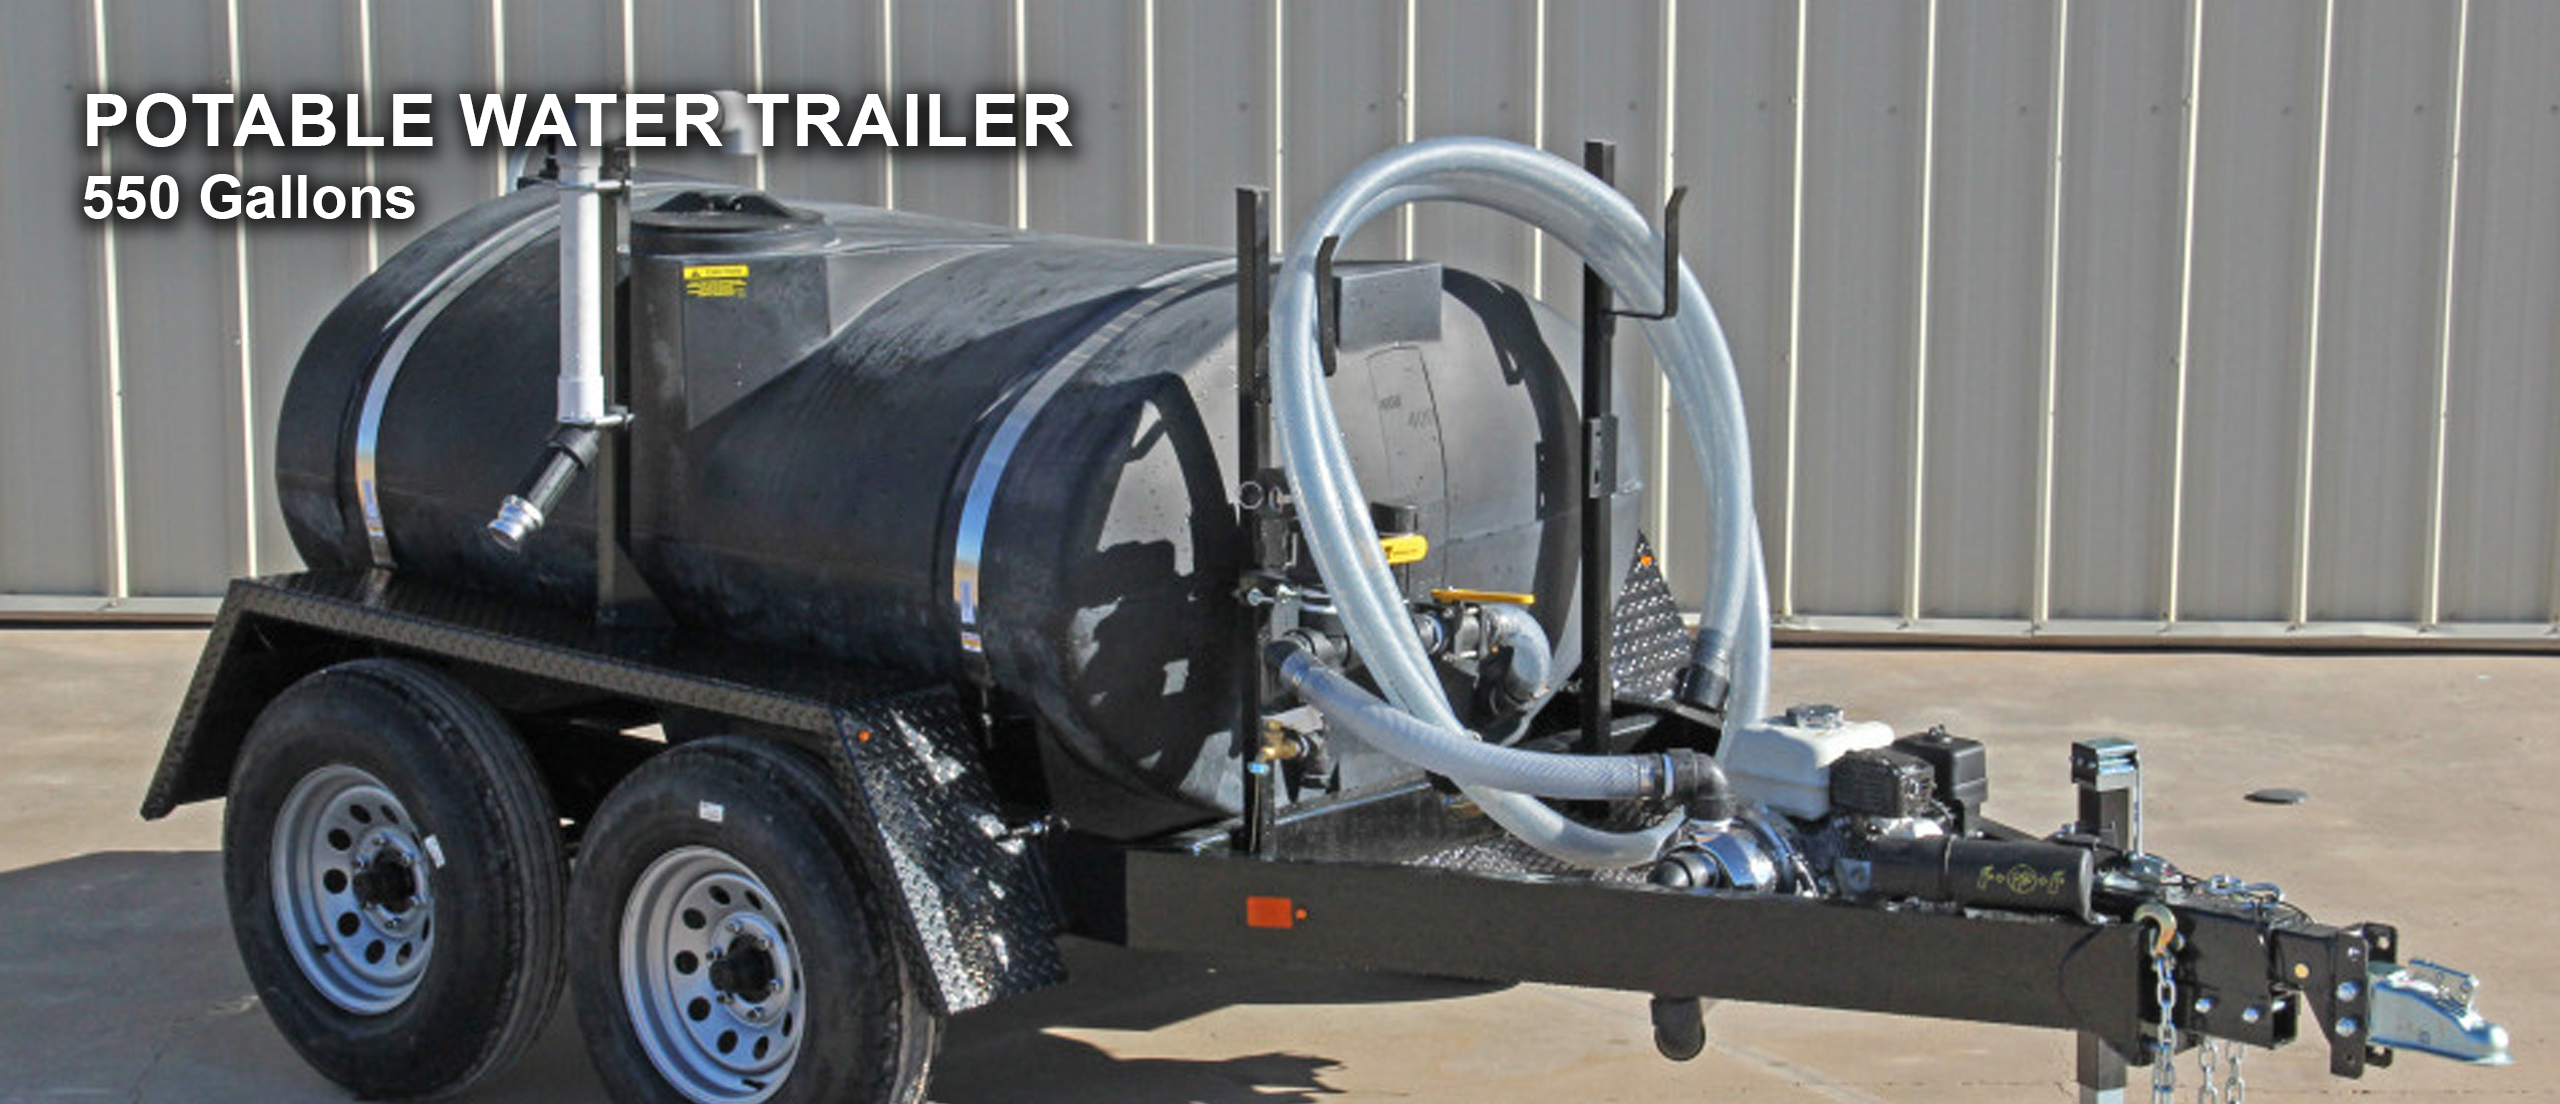 550-gallon-potable-water-trailer-banner